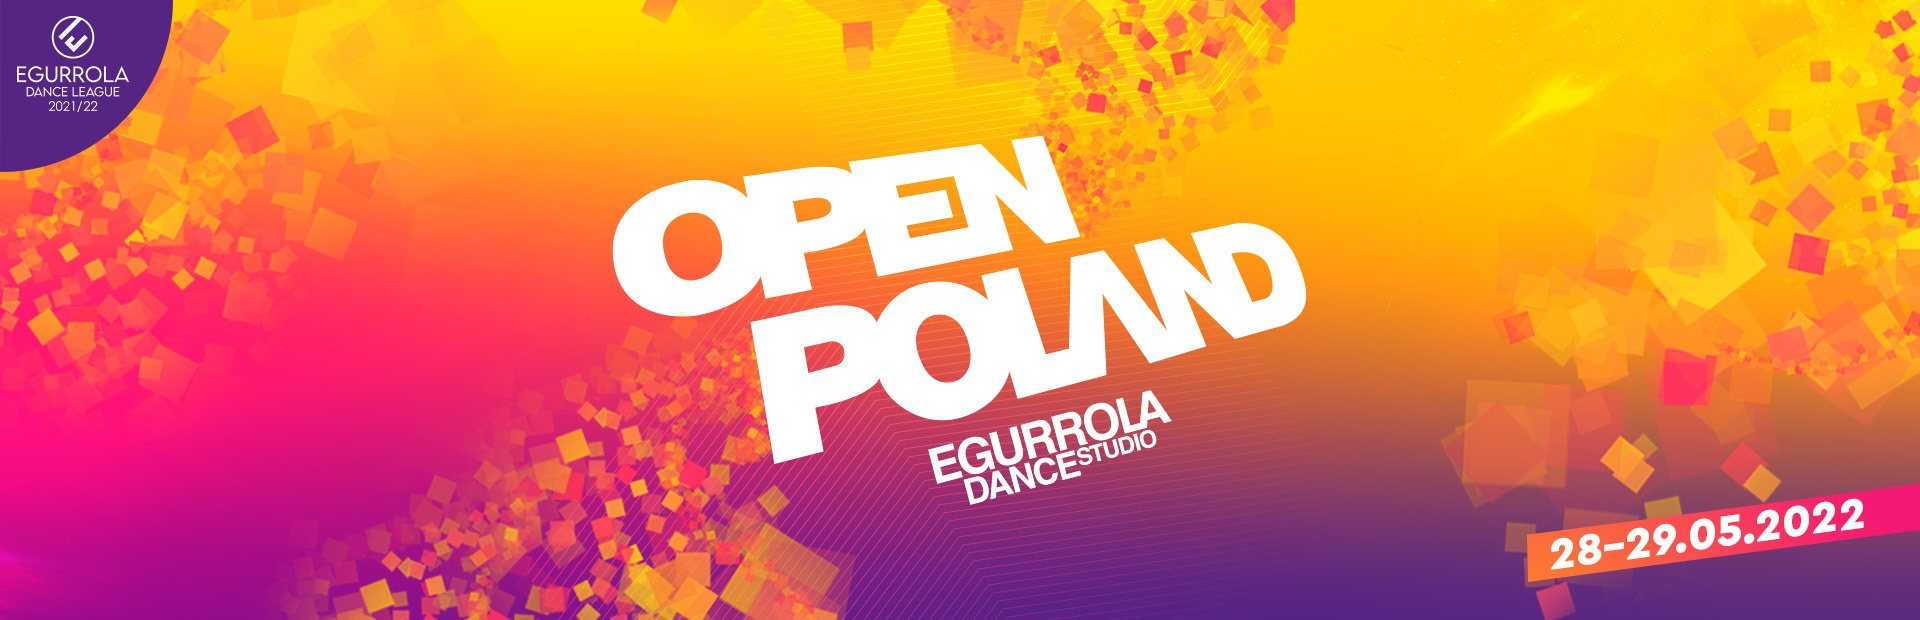 Open Poland Egurrola Dance Studio